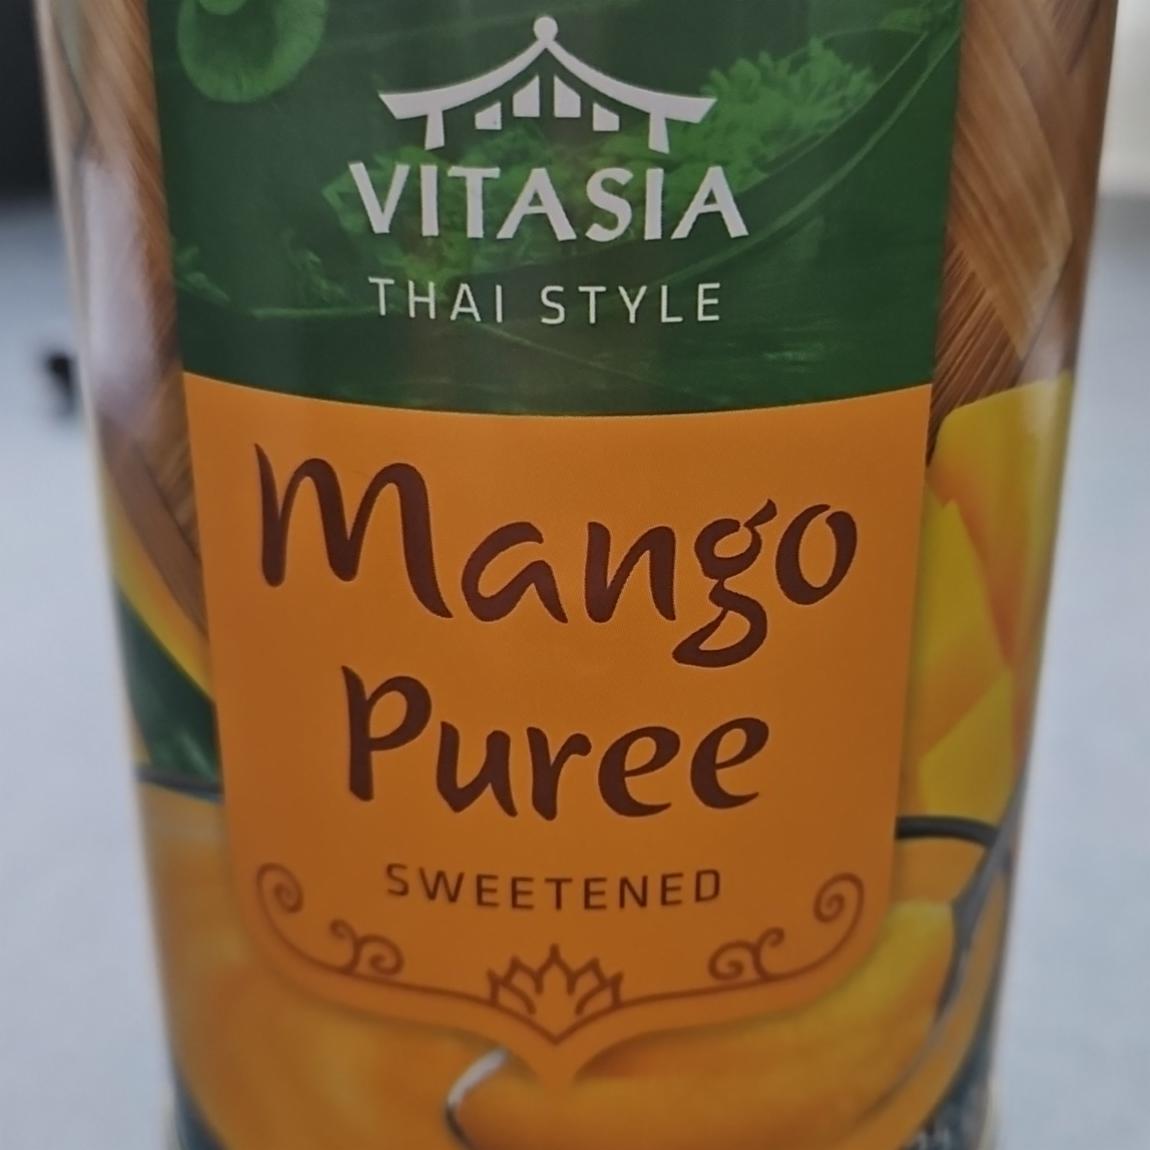 Képek - Mango Puree sweetened Vitasia